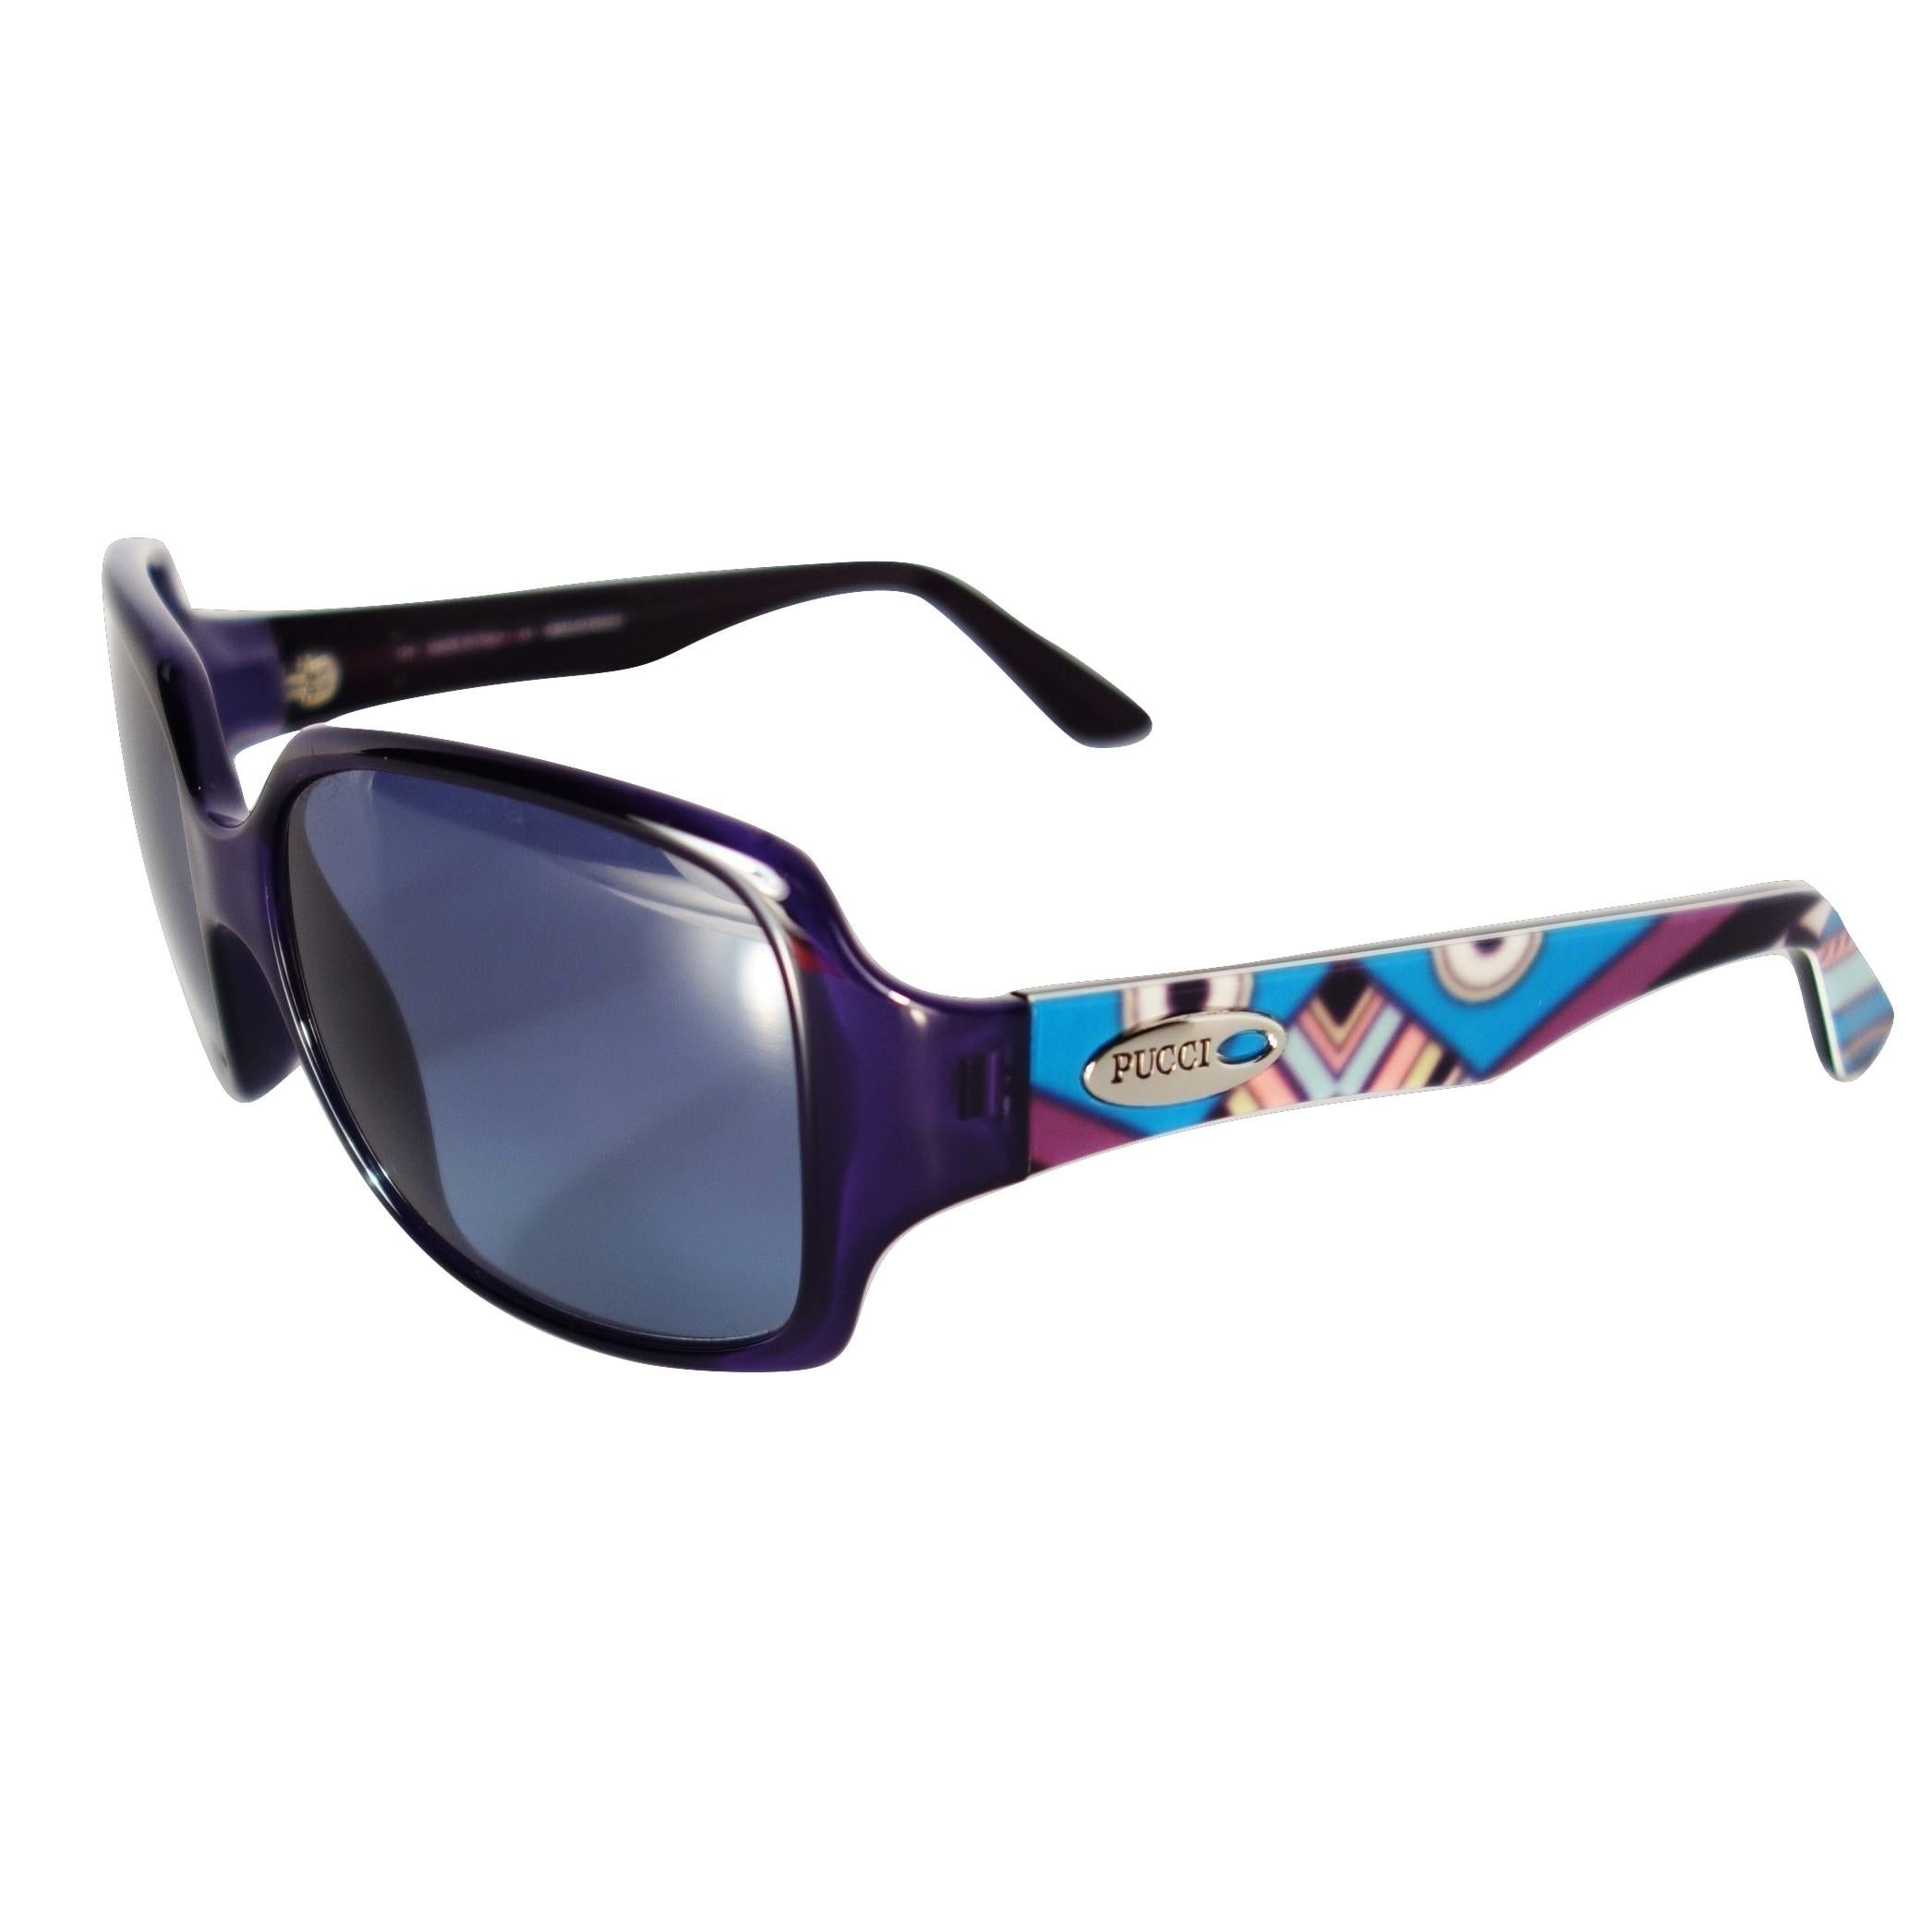 New Emilio Pucci Purple Logo Sunglasses  With Case & Box 1